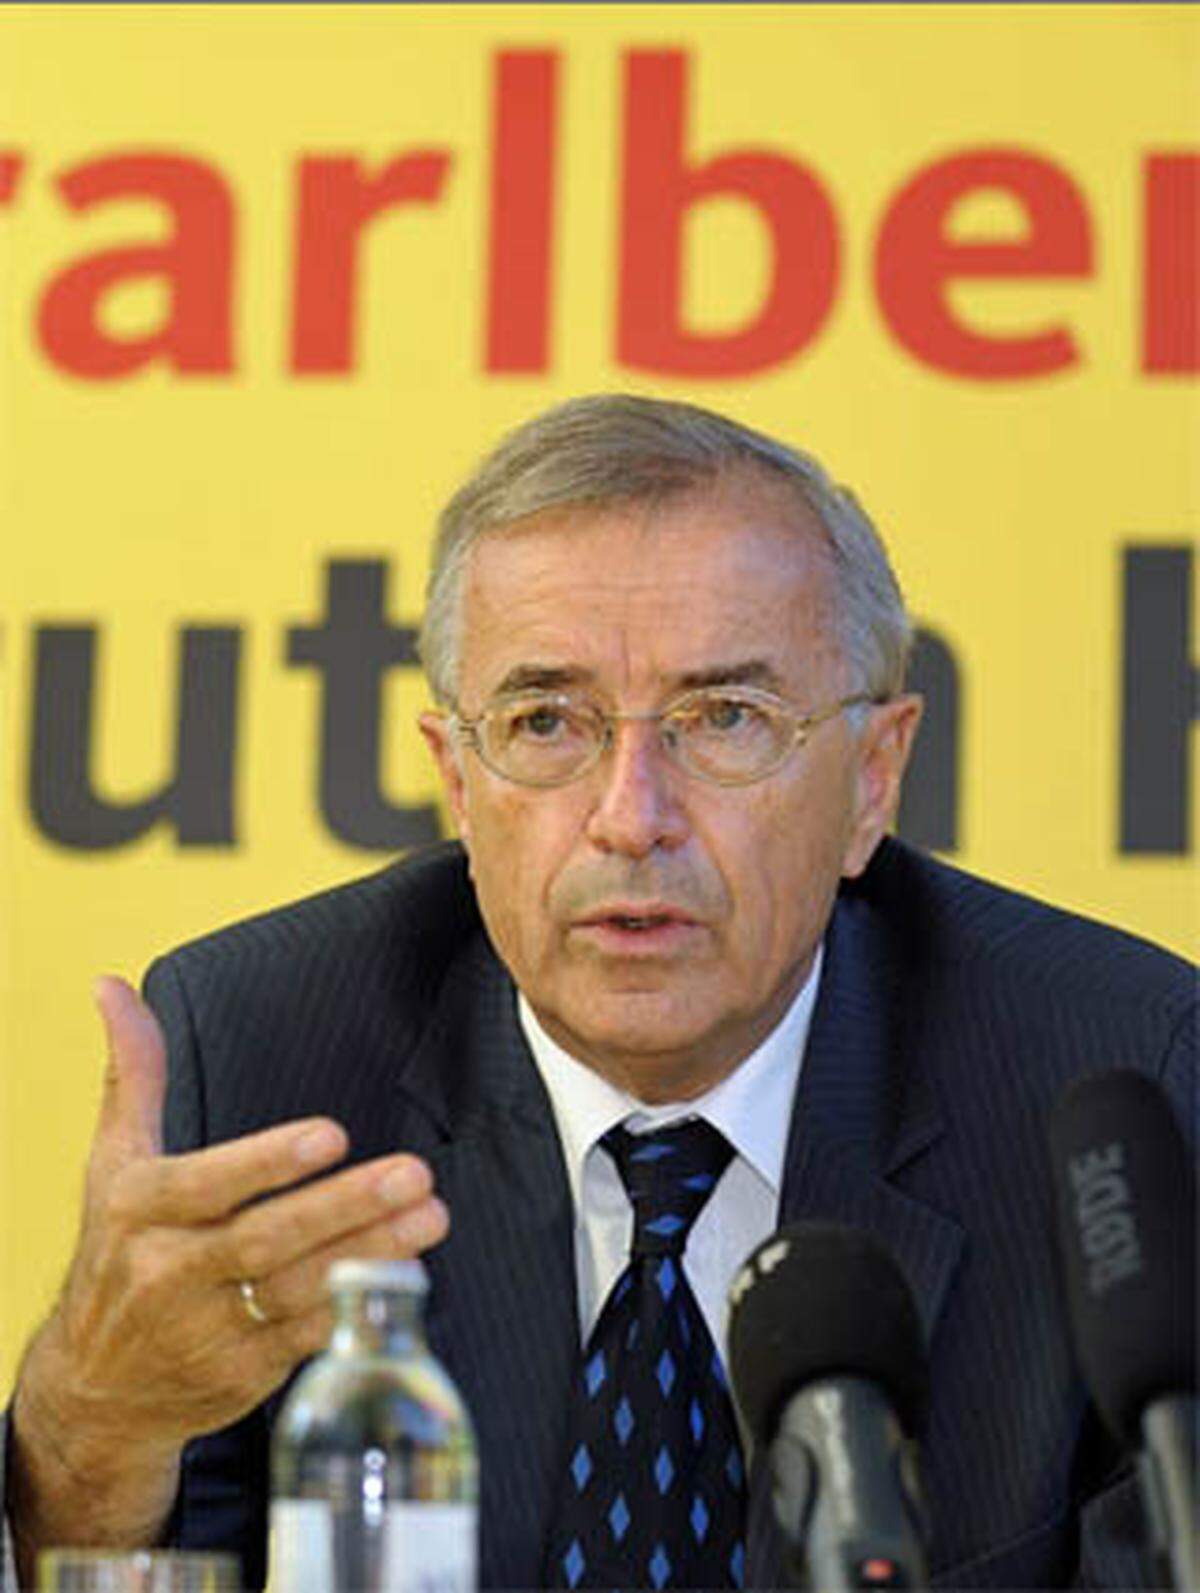 Sausgruber (geboren 1946) ist seit April 1997 Landeshauptmann. Er durchlief eine politische Bilderbuchkarriere. Nach Abschluss seines Jus-Studiums trat er 1972 in den Landesdienst ein. 1975 wurde er in die Gemeindevertretung seines Heimatorts Höchst am Bodensee gewählt, 1979 in den Landtag. Zwei Jahre später wurde Sausgruber Klubobmann der ÖVP-Fraktion, 1986 Parteiobmann. Mitglied der Vorarlberger Landesregierung ist er seit 1989, bereits 1990 wurde er zum Landesstatthalter (Landeshauptmannstellvertreter) bestimmt. 1994 designierte ihn der damalige Landeshauptmann Martin Purtscher zu seinem Nachfolger. Sausgruber ist verheiratet und Vater zweier Söhne und einer Tochter sowie Großvater von vier Enkelkindern.